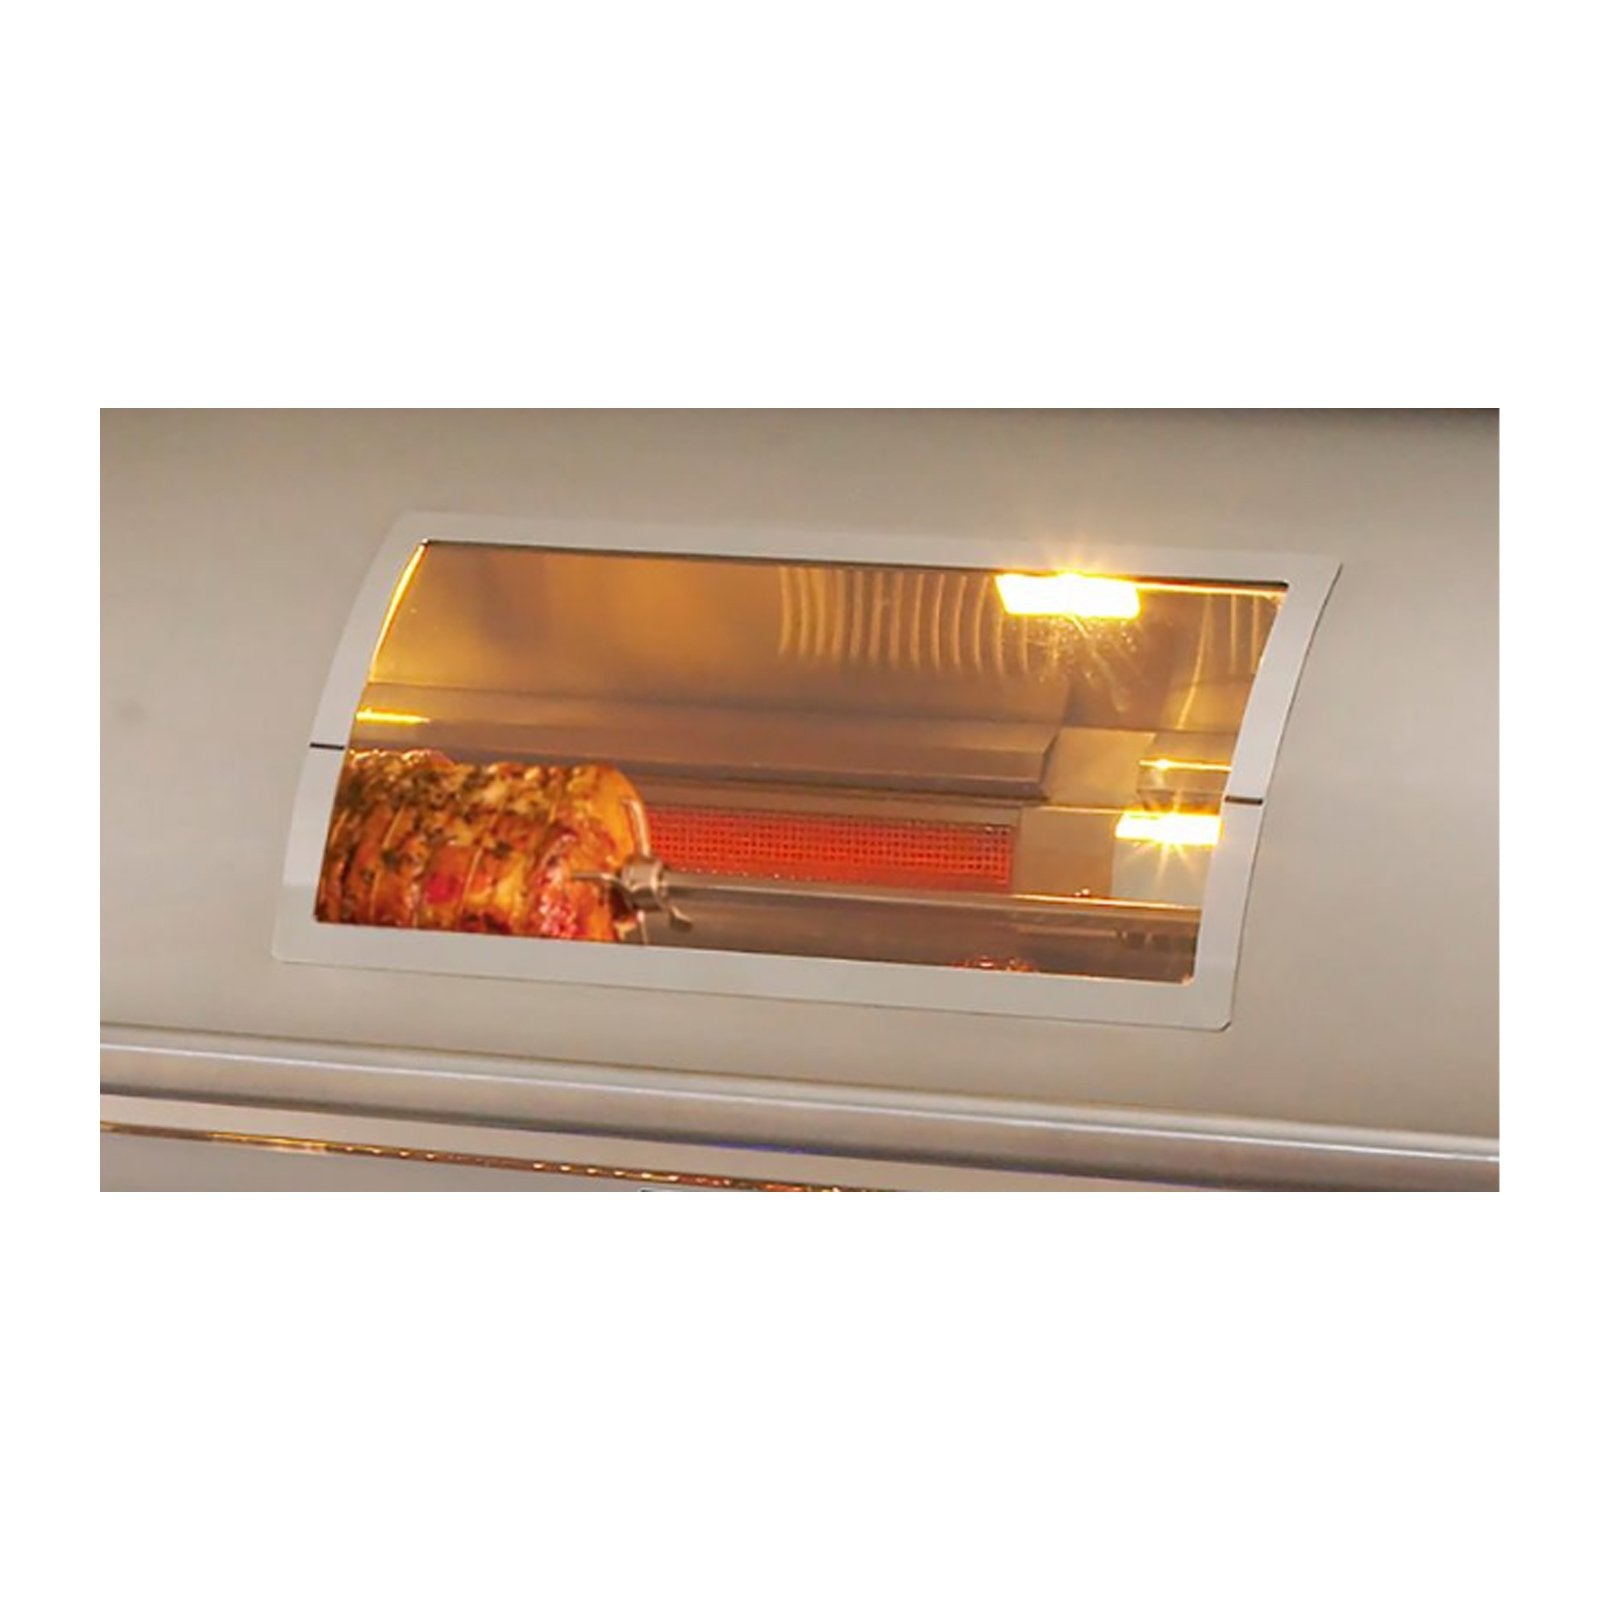 fire-magic-30-e660i-built-in-grill-w-infra-burner-rotiss-digi-display-window 12